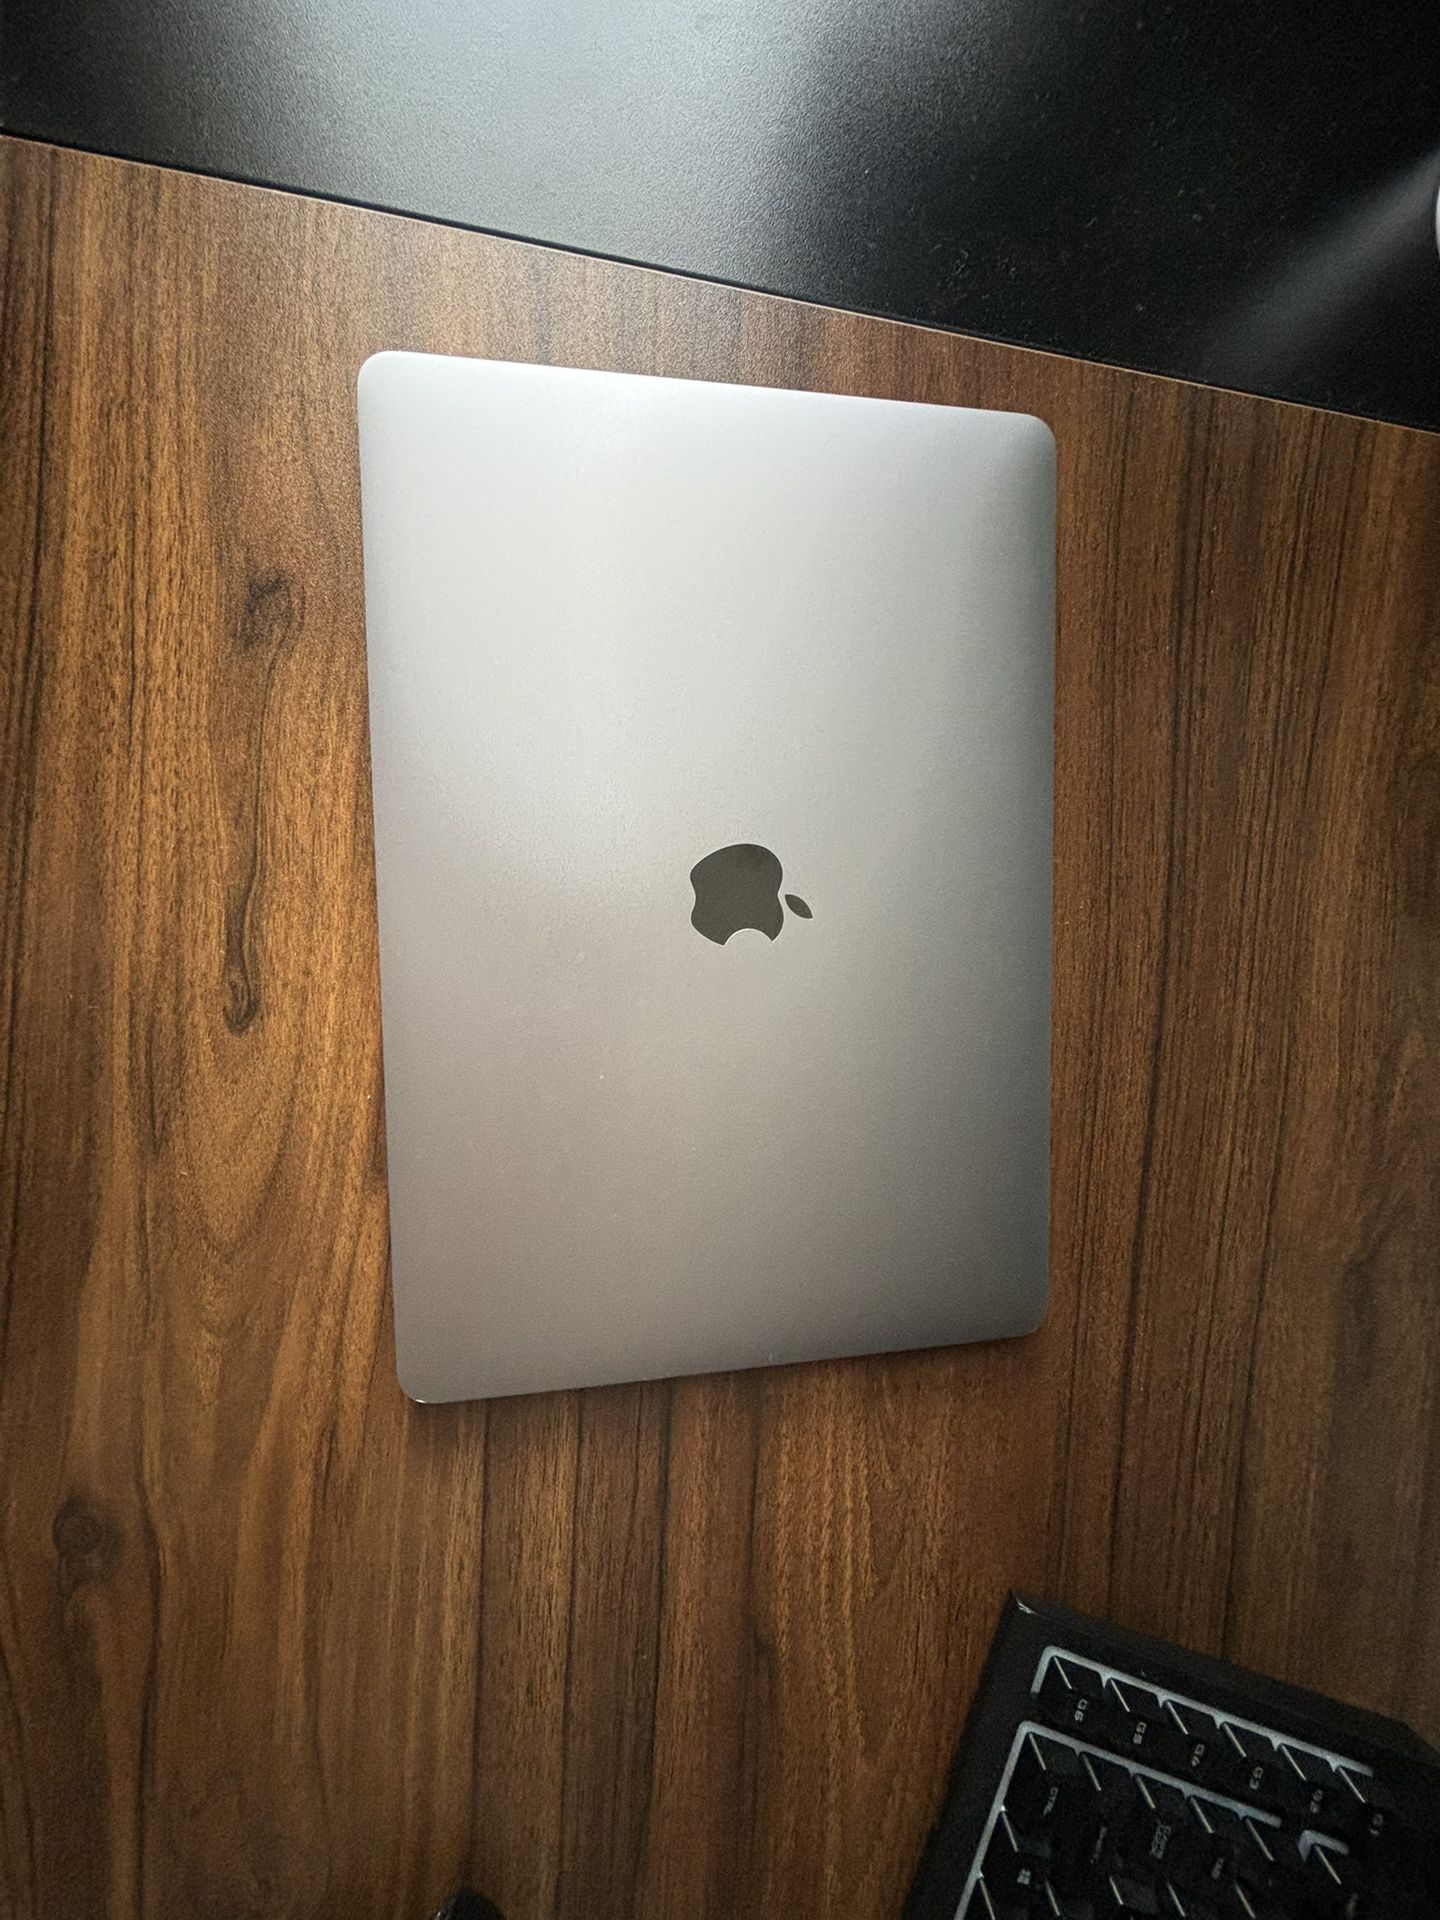 Macbook Pro 13’